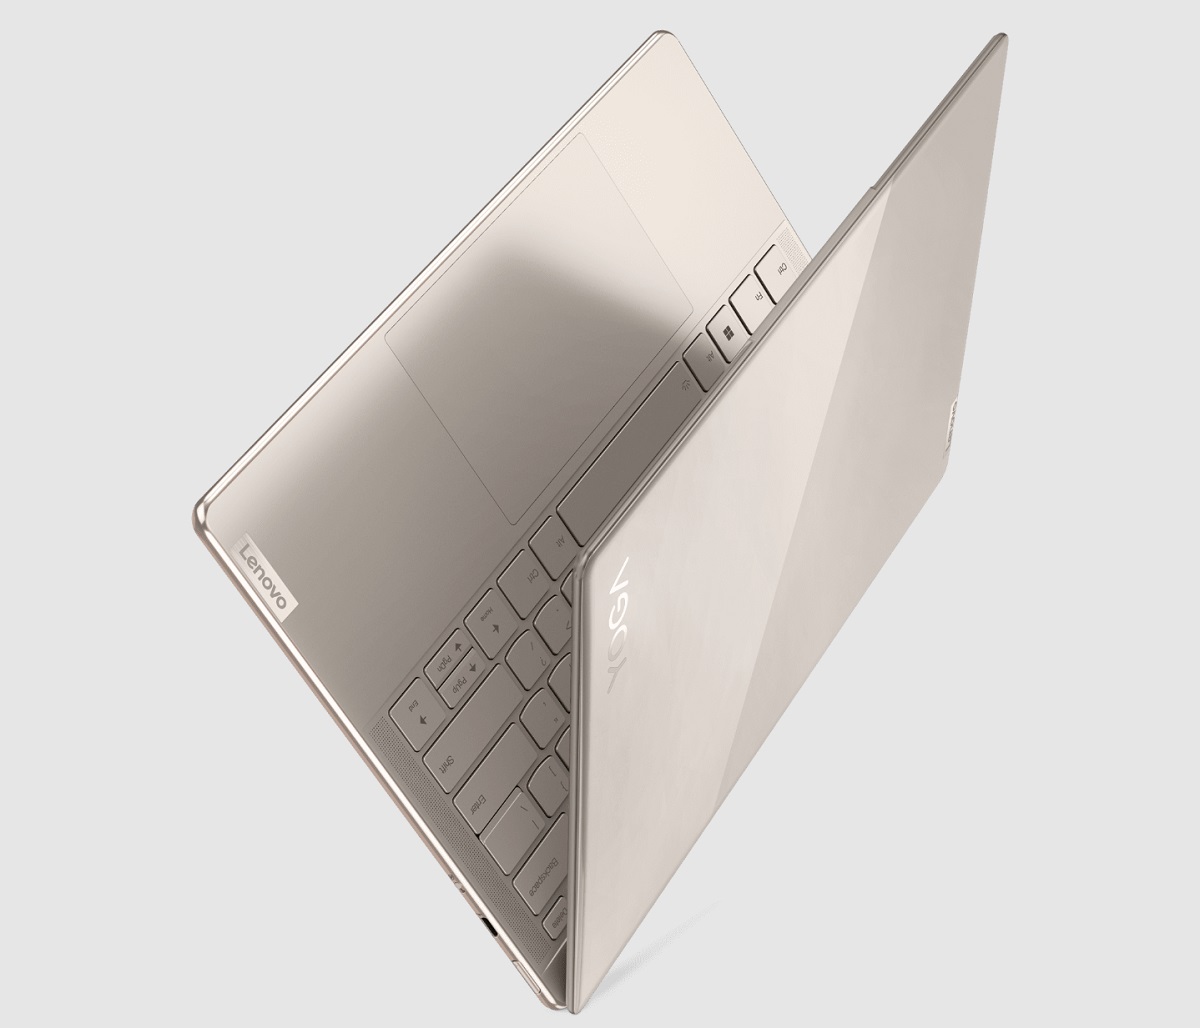 Nowe laptopy Levono Yoga wkraczają na rynek. Oferta naprawdę się rozrasta